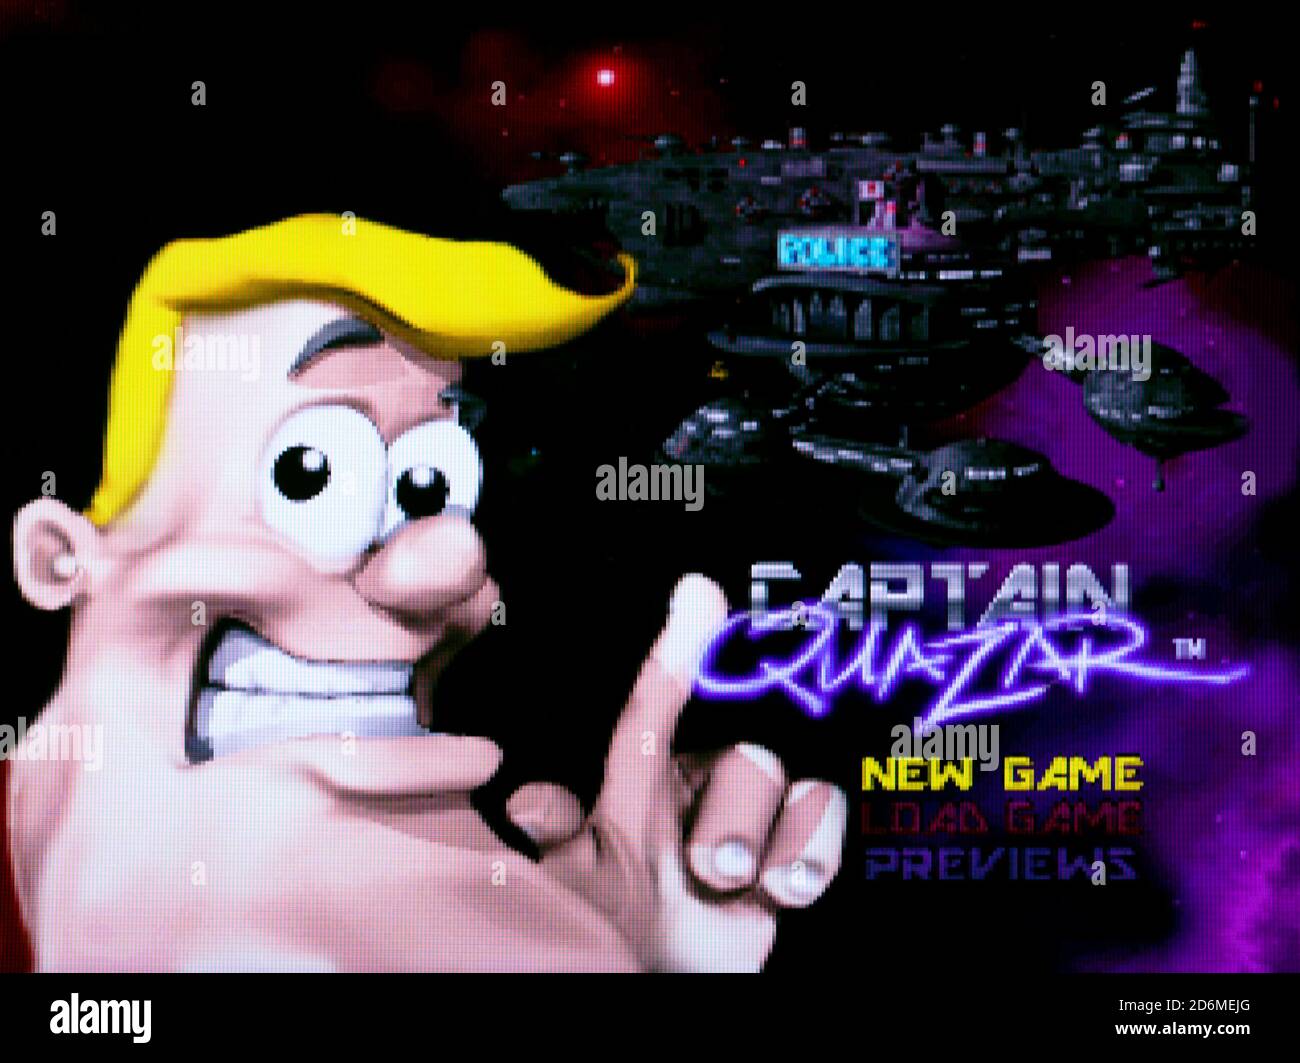 Captain Quazar - 3DO Interactive Multiplayer Videogame - Editorial Use Only Stock Photo